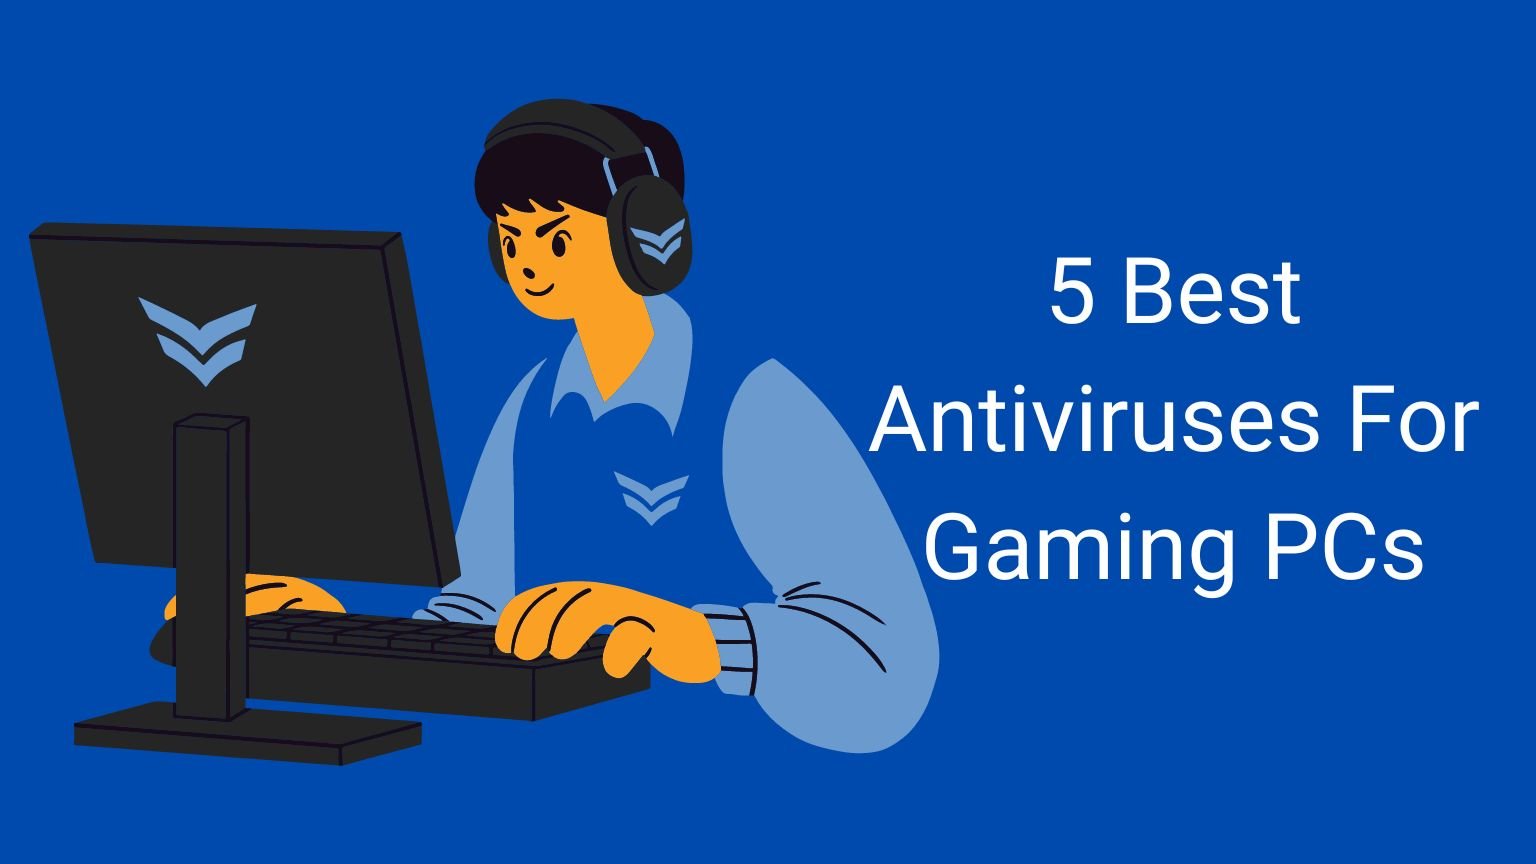 Best Antiviruses For Gaming PCs